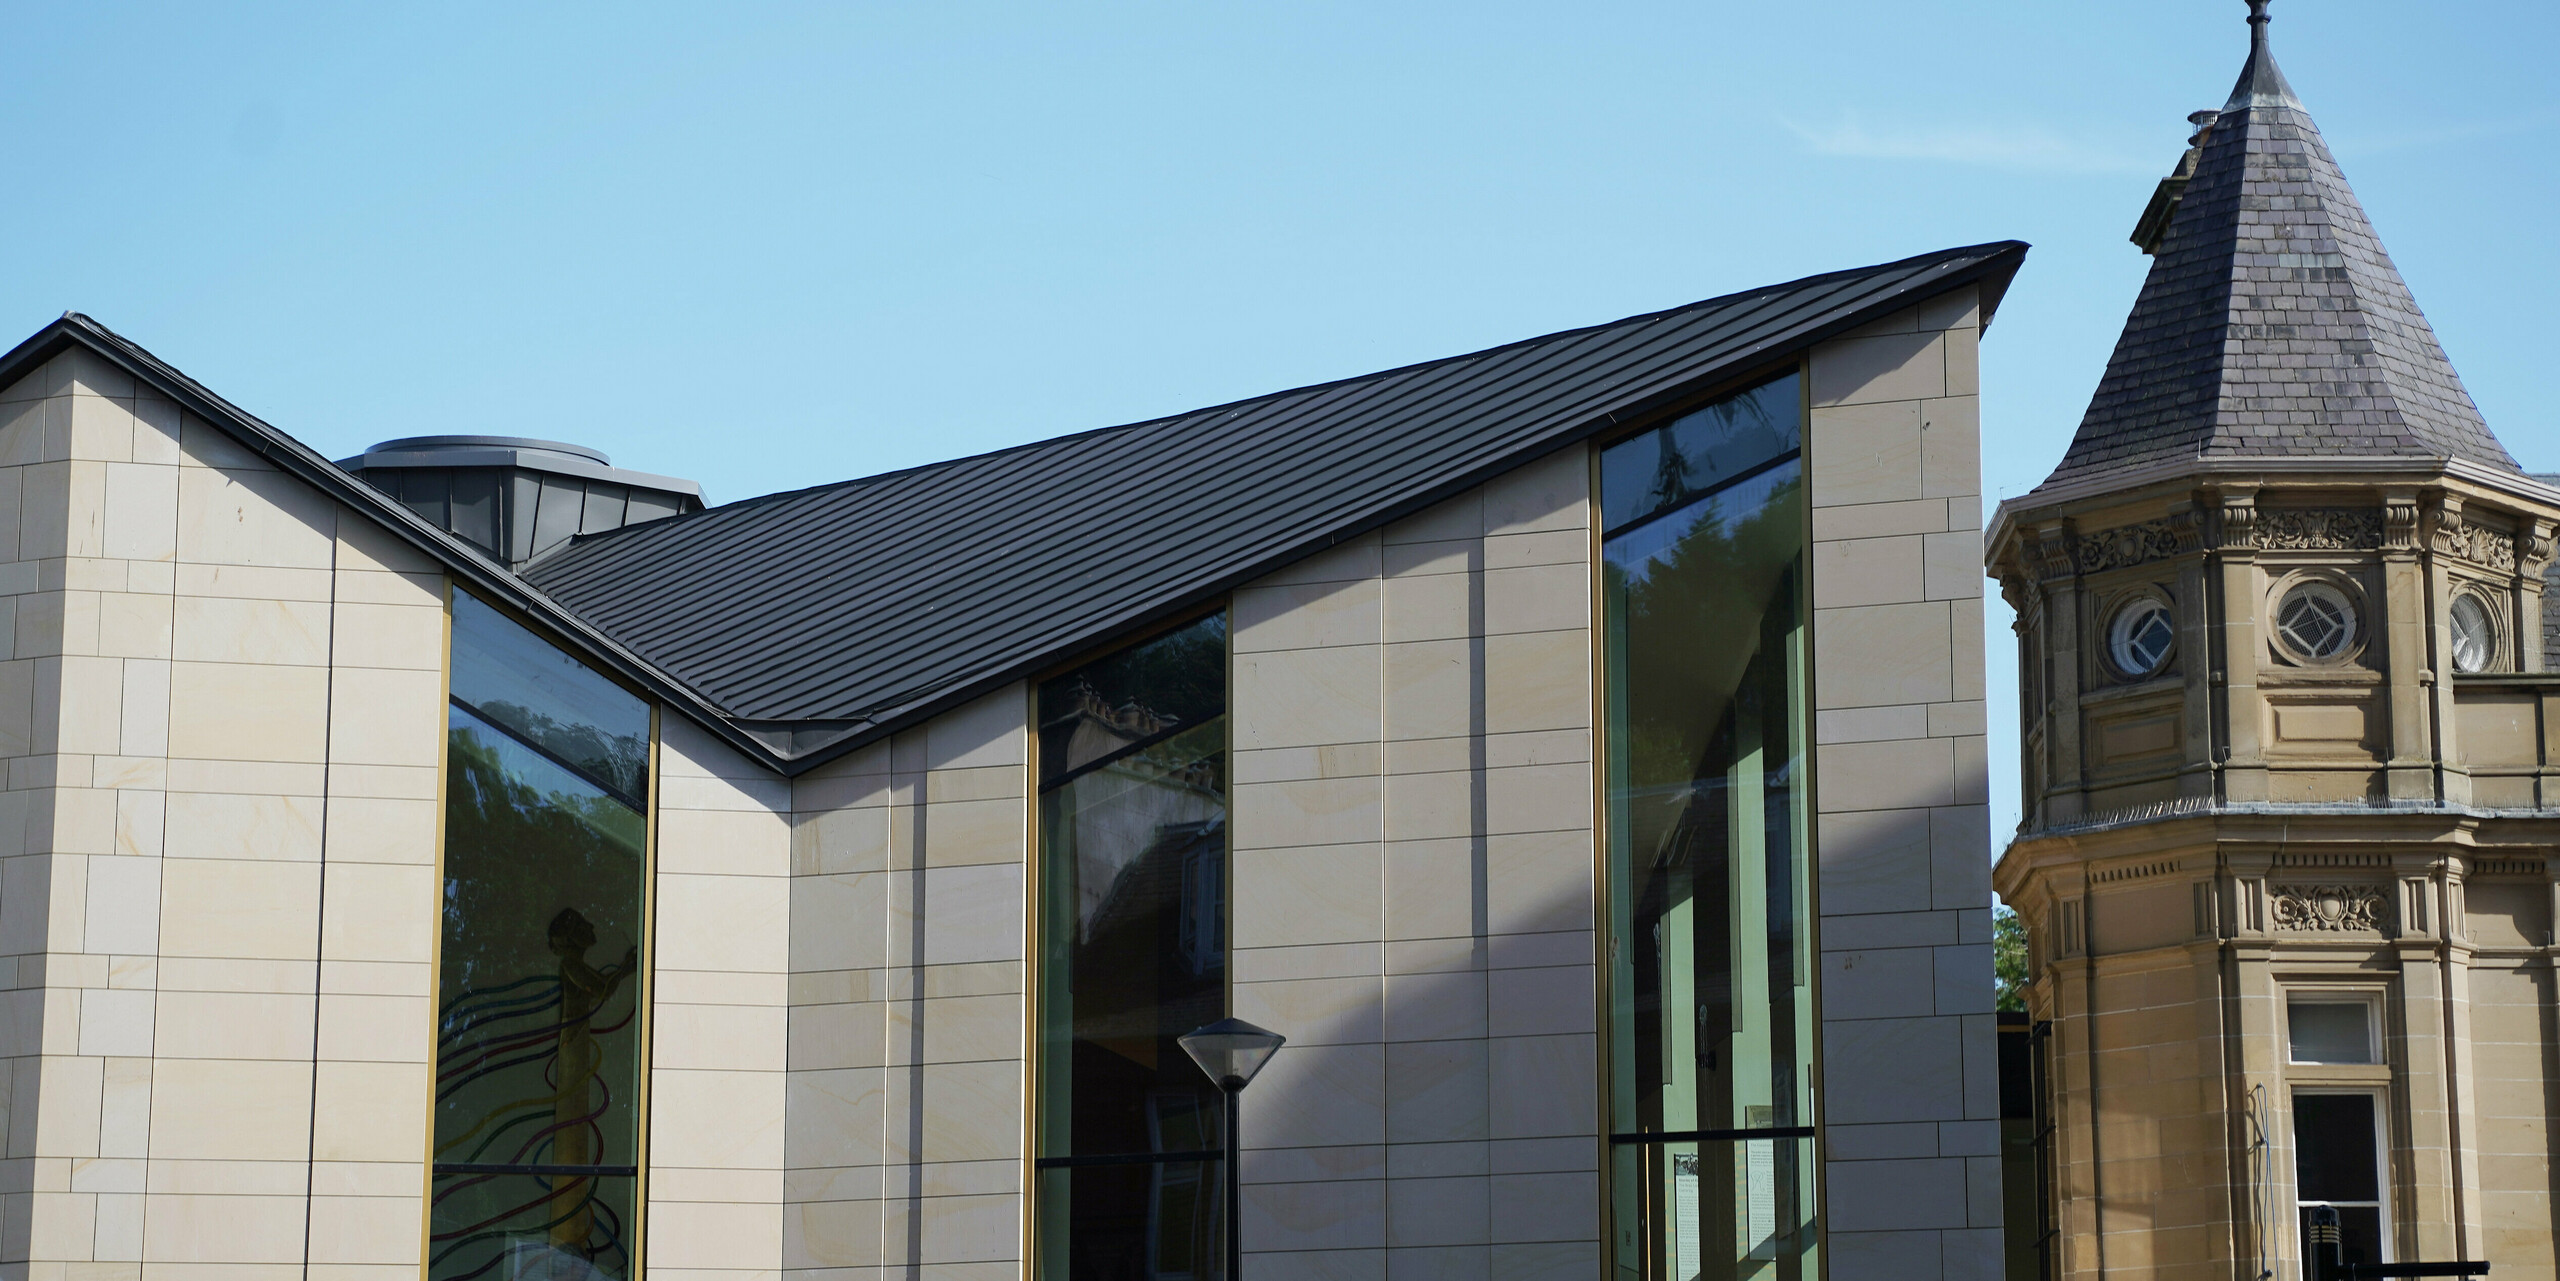 Seitenansicht des Museums 'The Great Tapestry of Scotland' in Galashiels, das sich durch ein modernes PREFALZ Dach in P.10 Zinkgrau auszeichnet. Das Dach mit seinen klaren, geometrischen Linien bildet einen reizvollen Kontrast zu den traditionellen Sandsteinfassaden der benachbarten Gebäude. Die einzigartige Dachkonstruktion mit den markanten Kanten verleiht dem Gebäude ein zeitgenössisches Flair und unterstreicht die Verbindung von historischer Architektur und modernem Design.